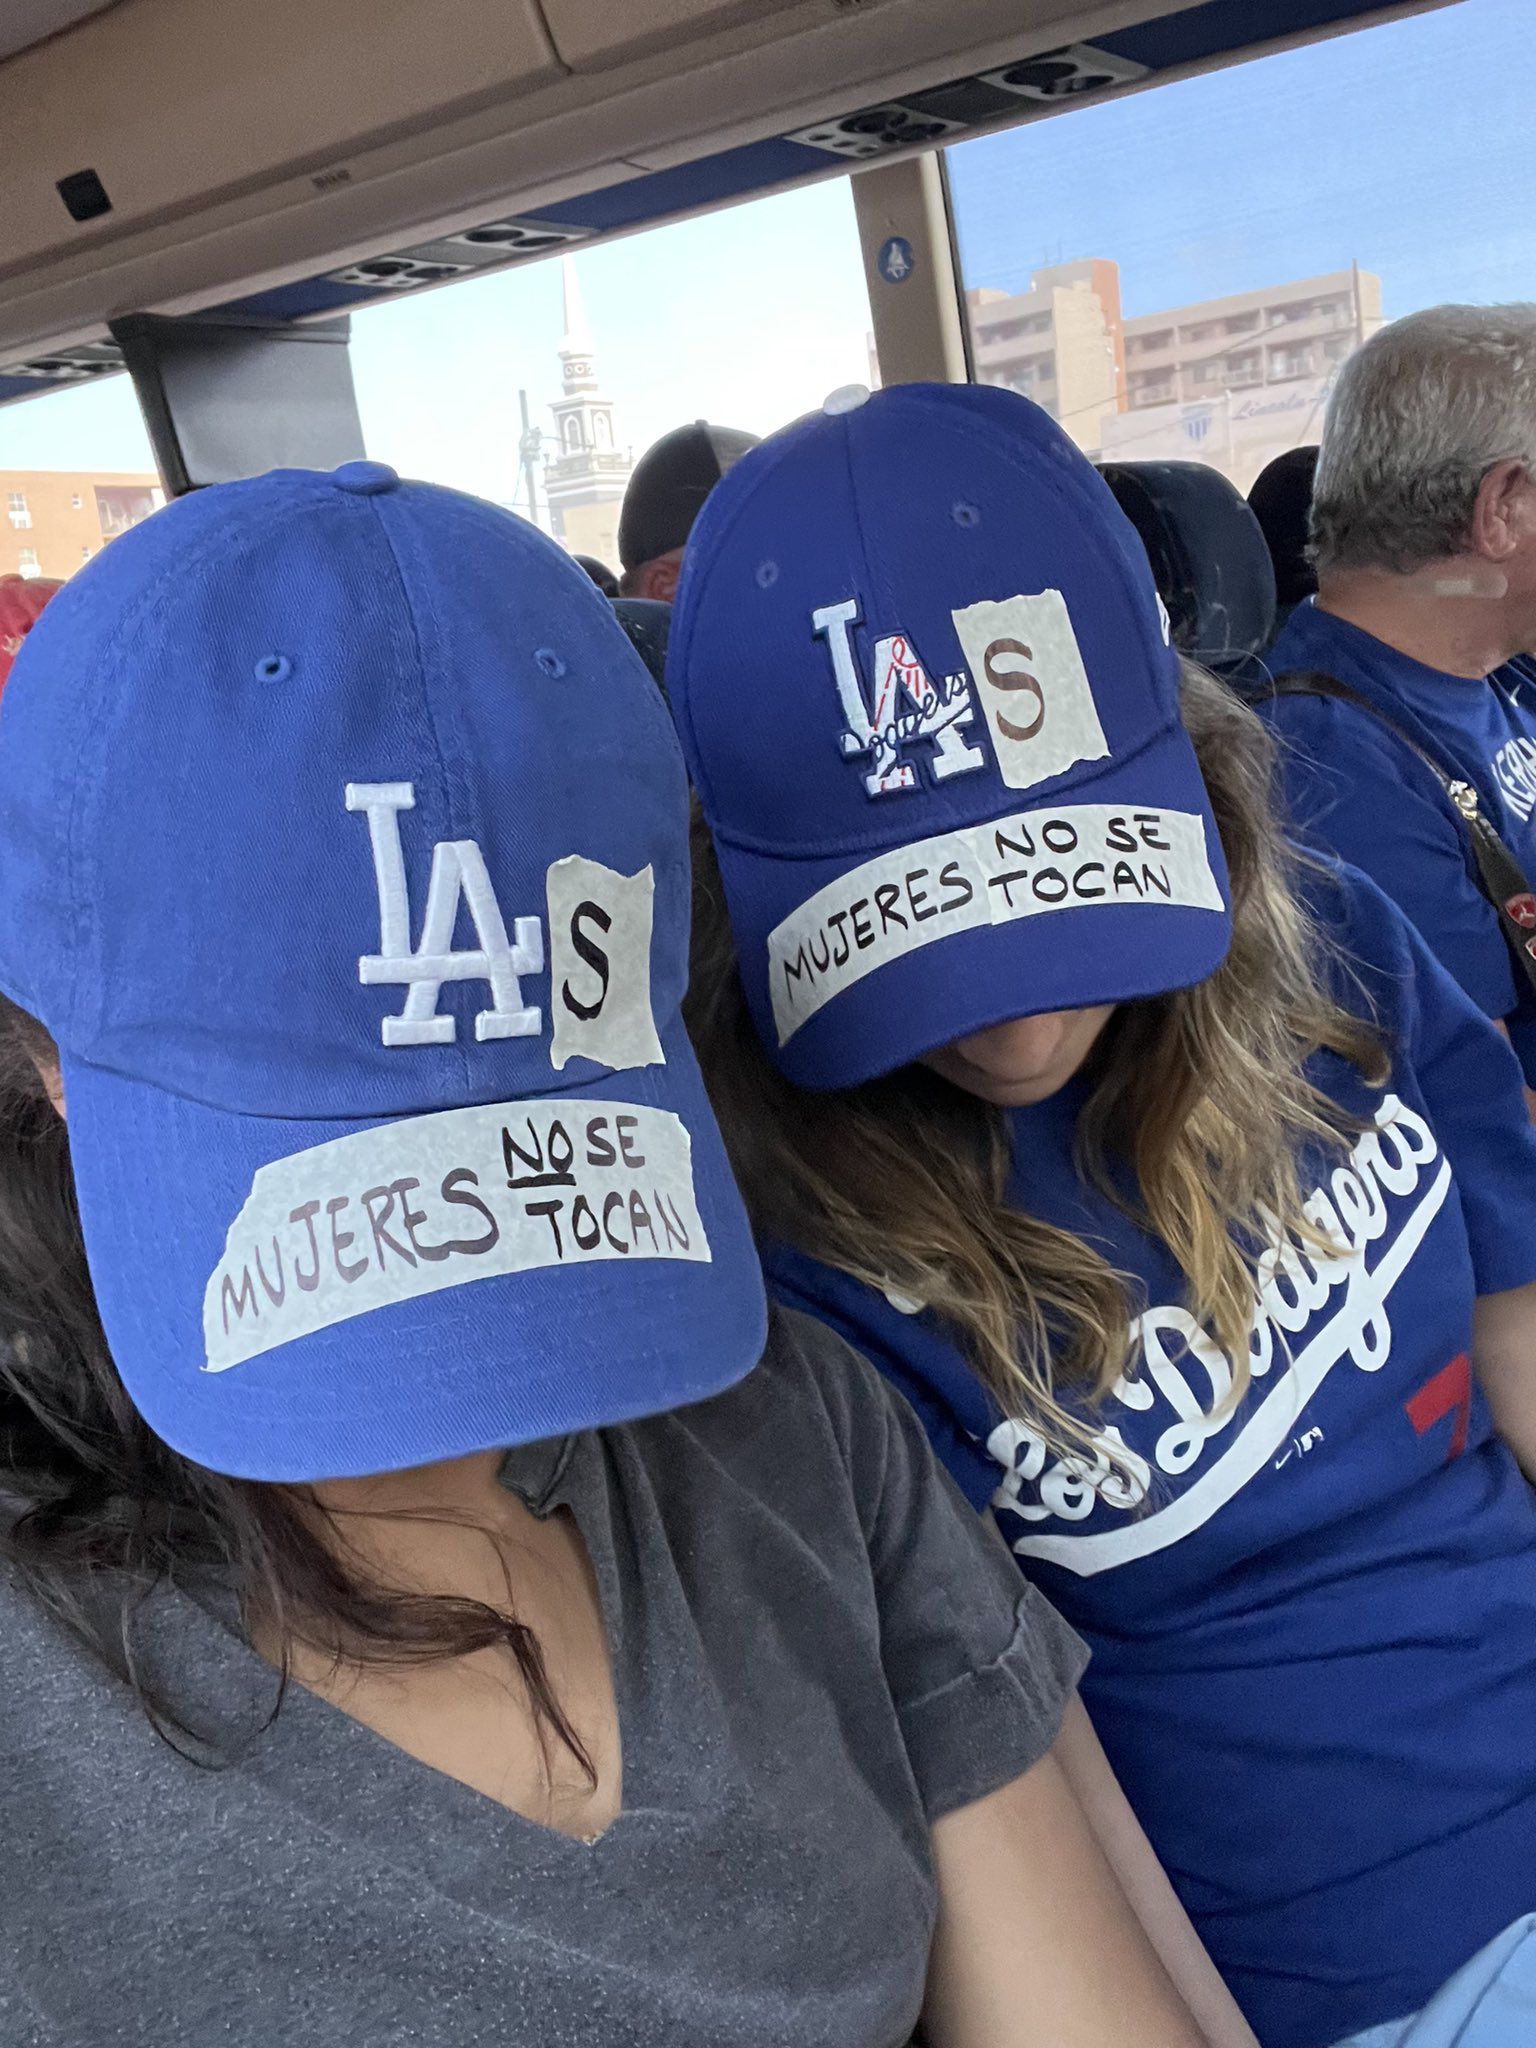 Fans de los Dodgers protestan en contra de Julio Urías: “Las